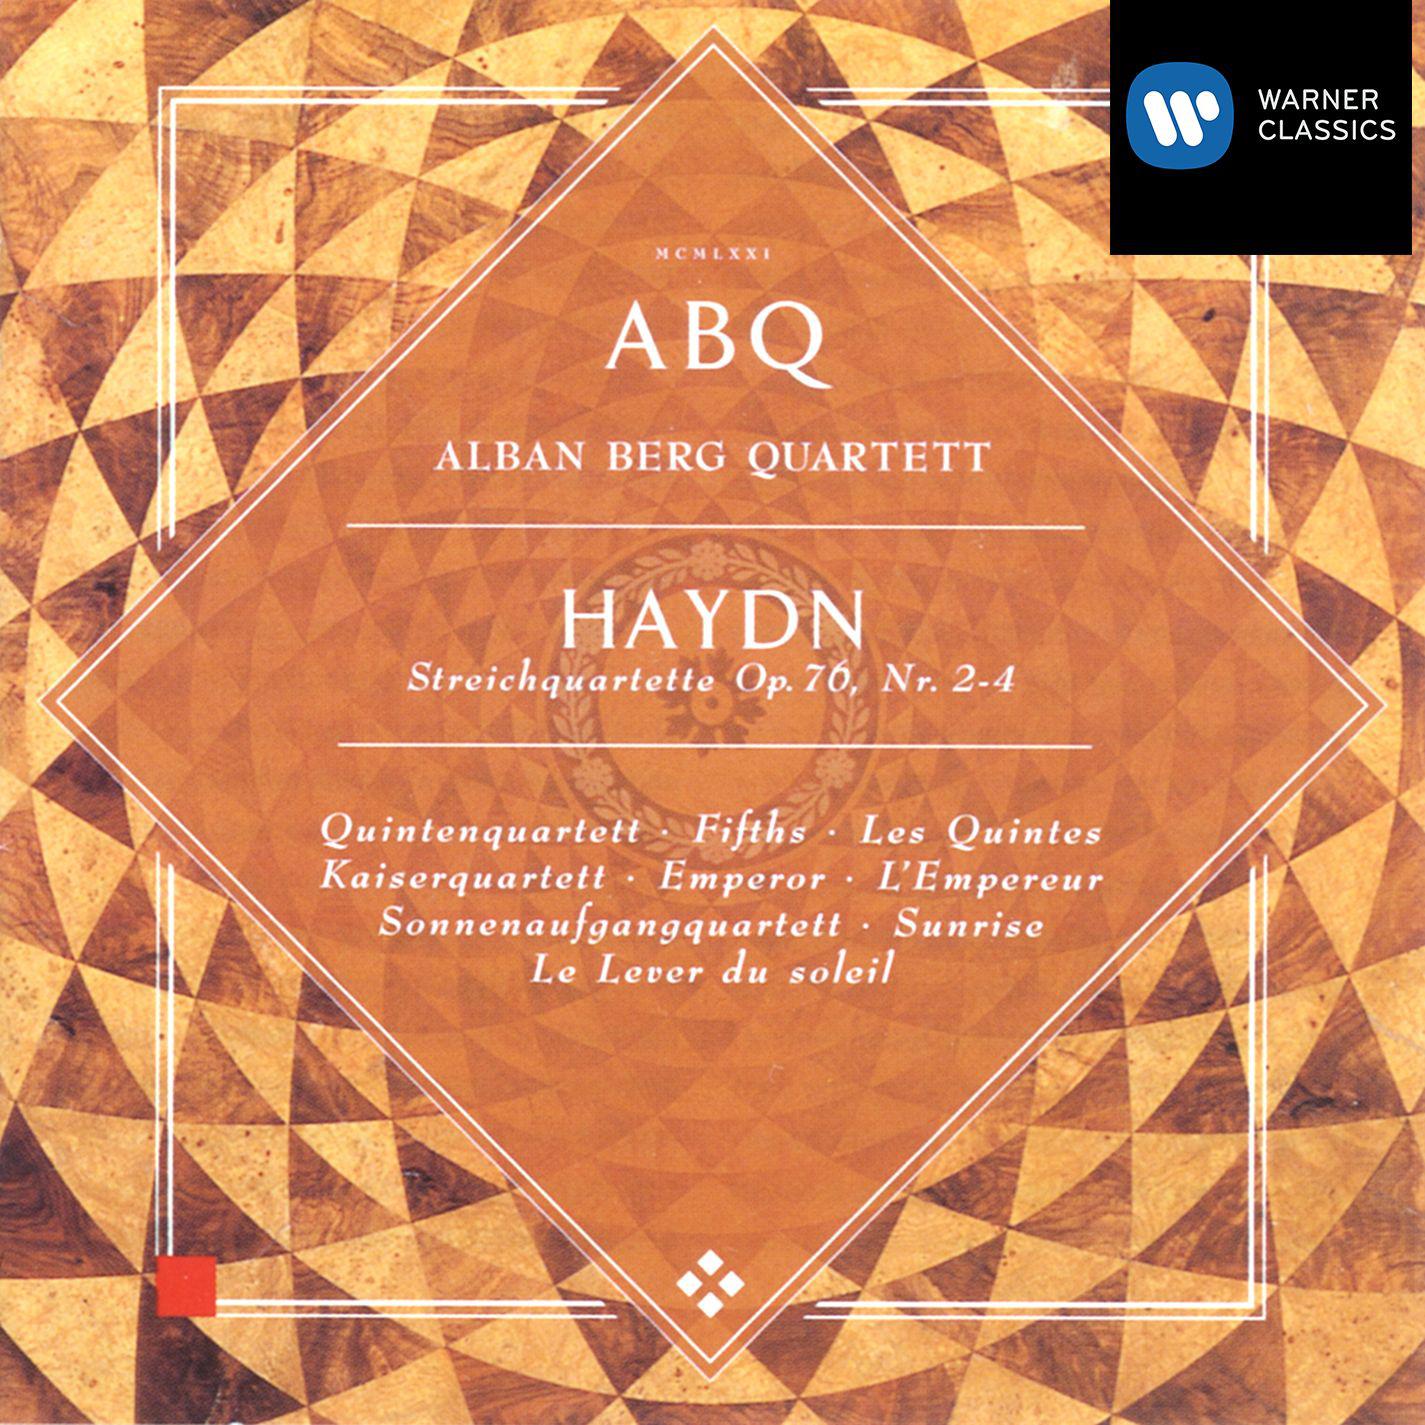 String Quartet in C Major, Op. 76 No. 3, Hob. III:77 "Emperor": IV. Finale. Presto